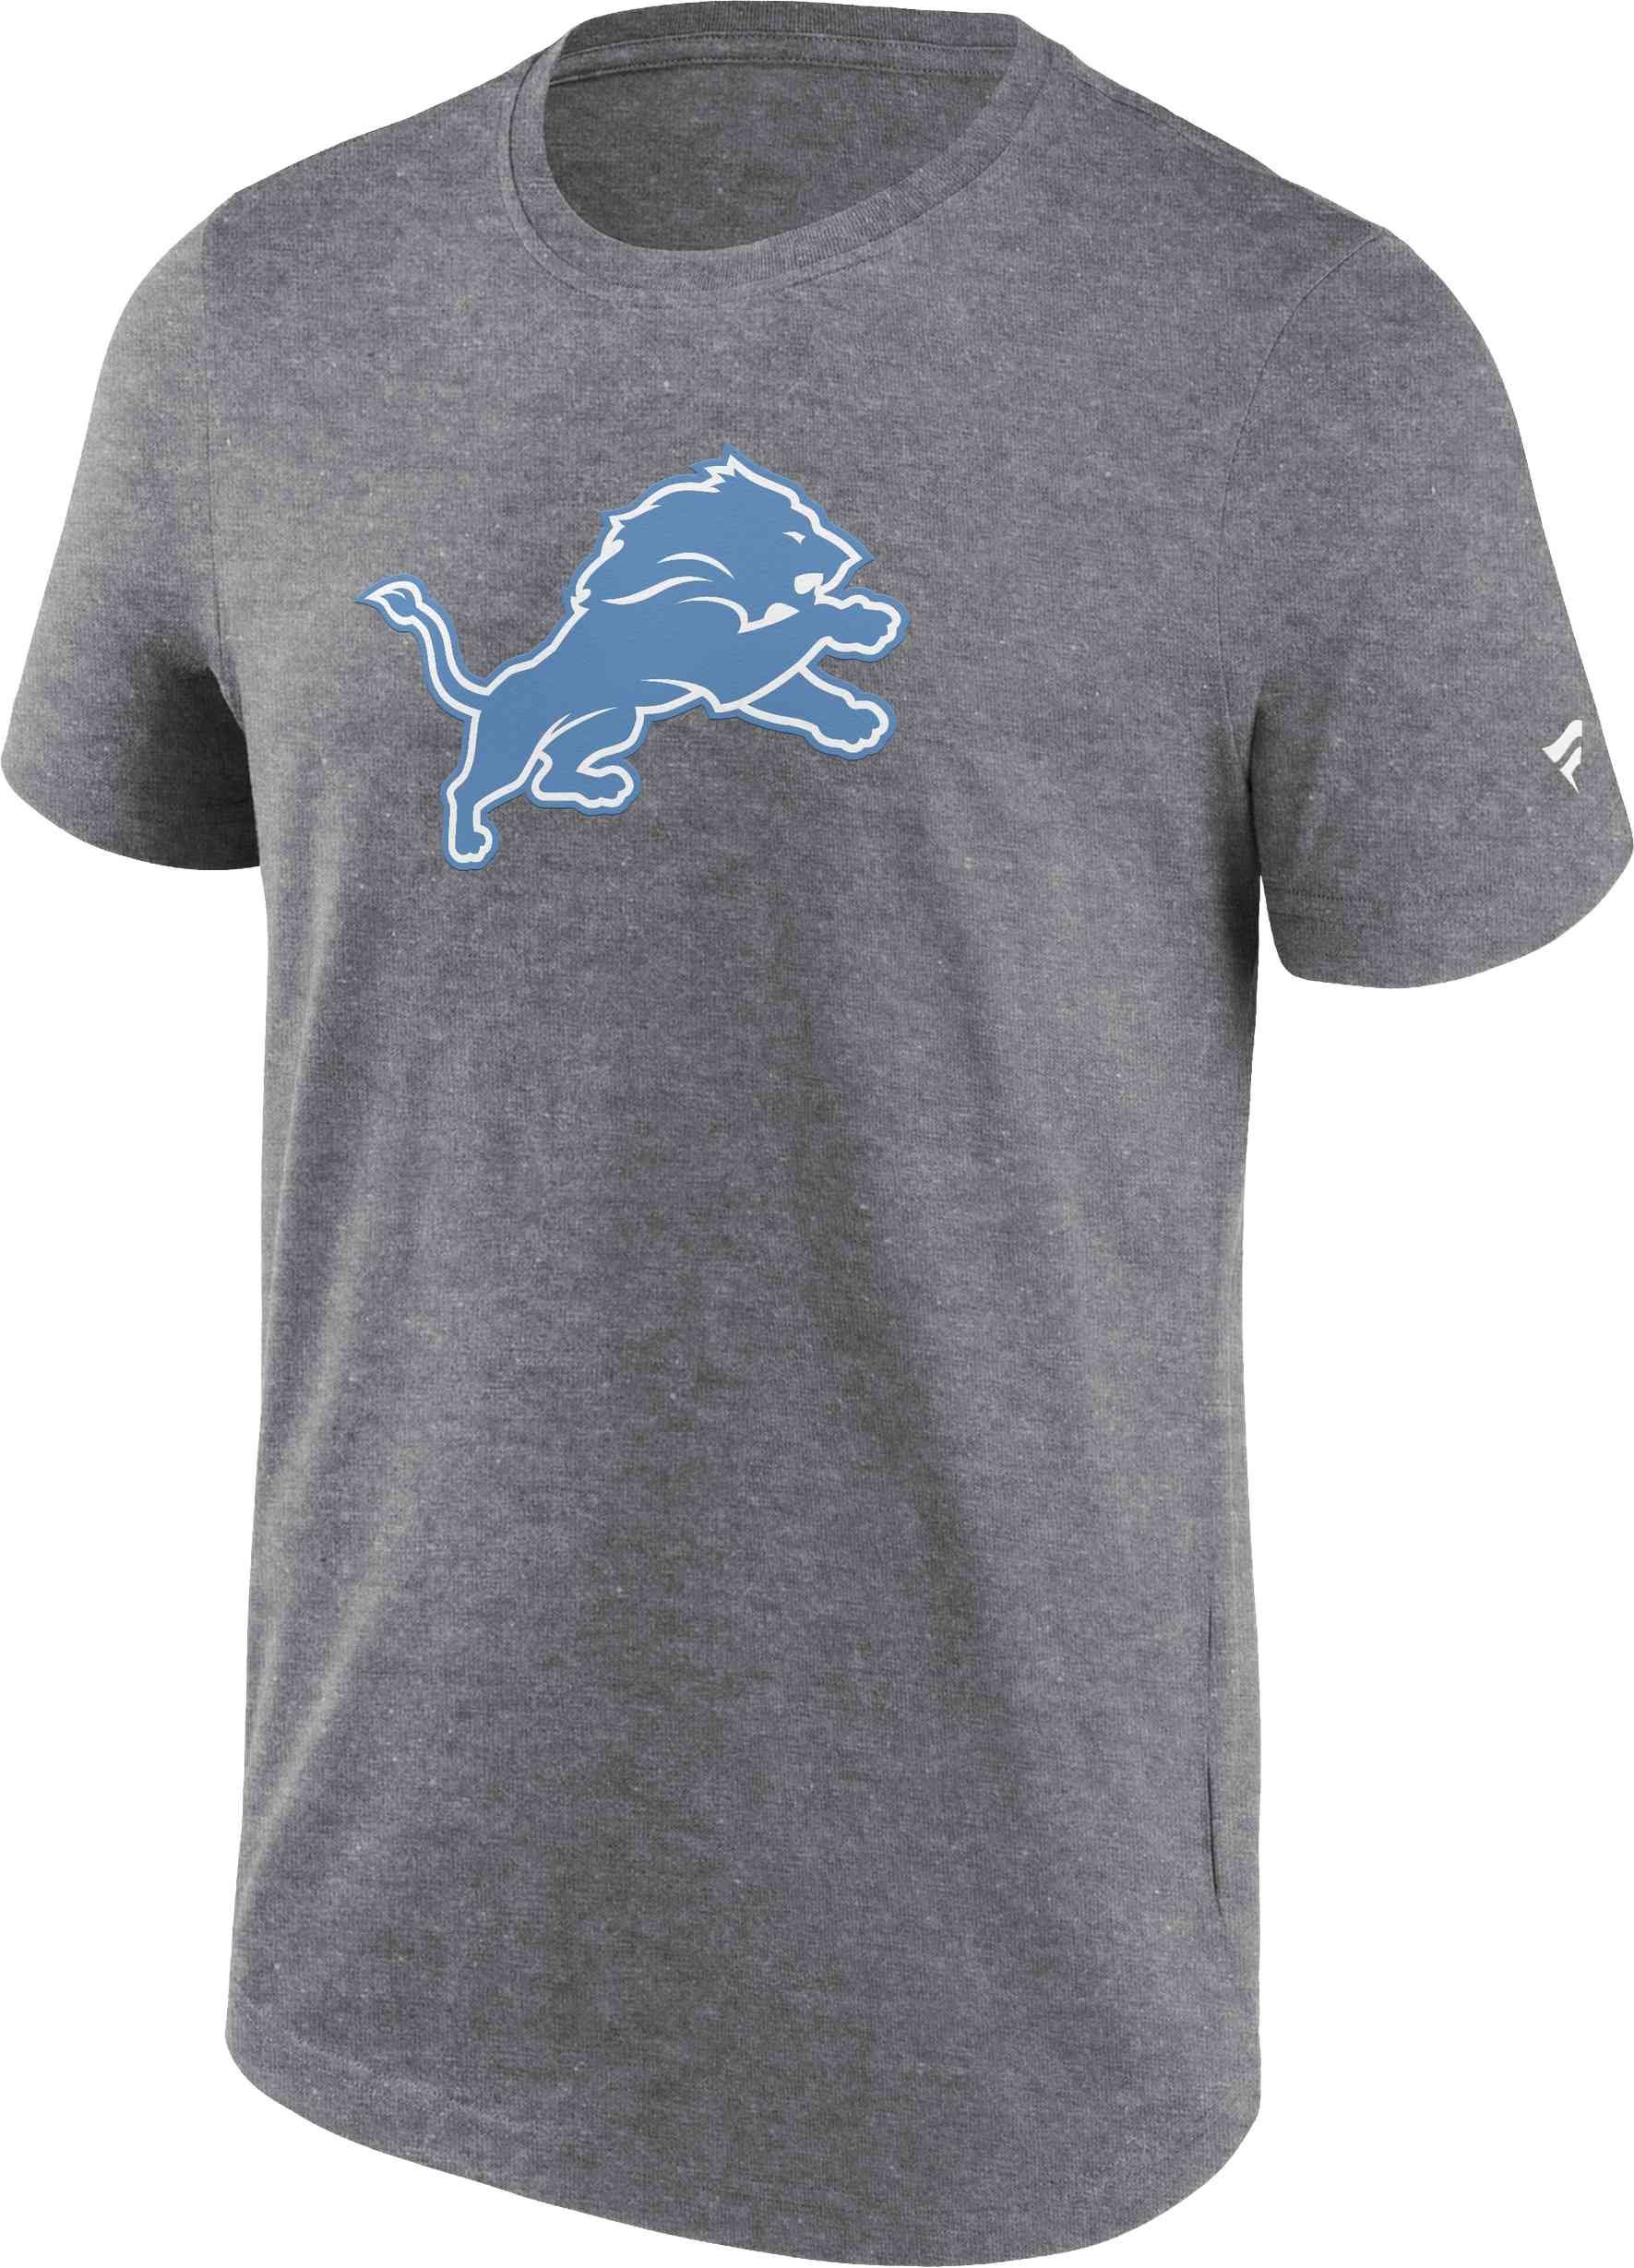 T-Shirt Primary Fanatics Graphic Lions Detroit Logo NFL